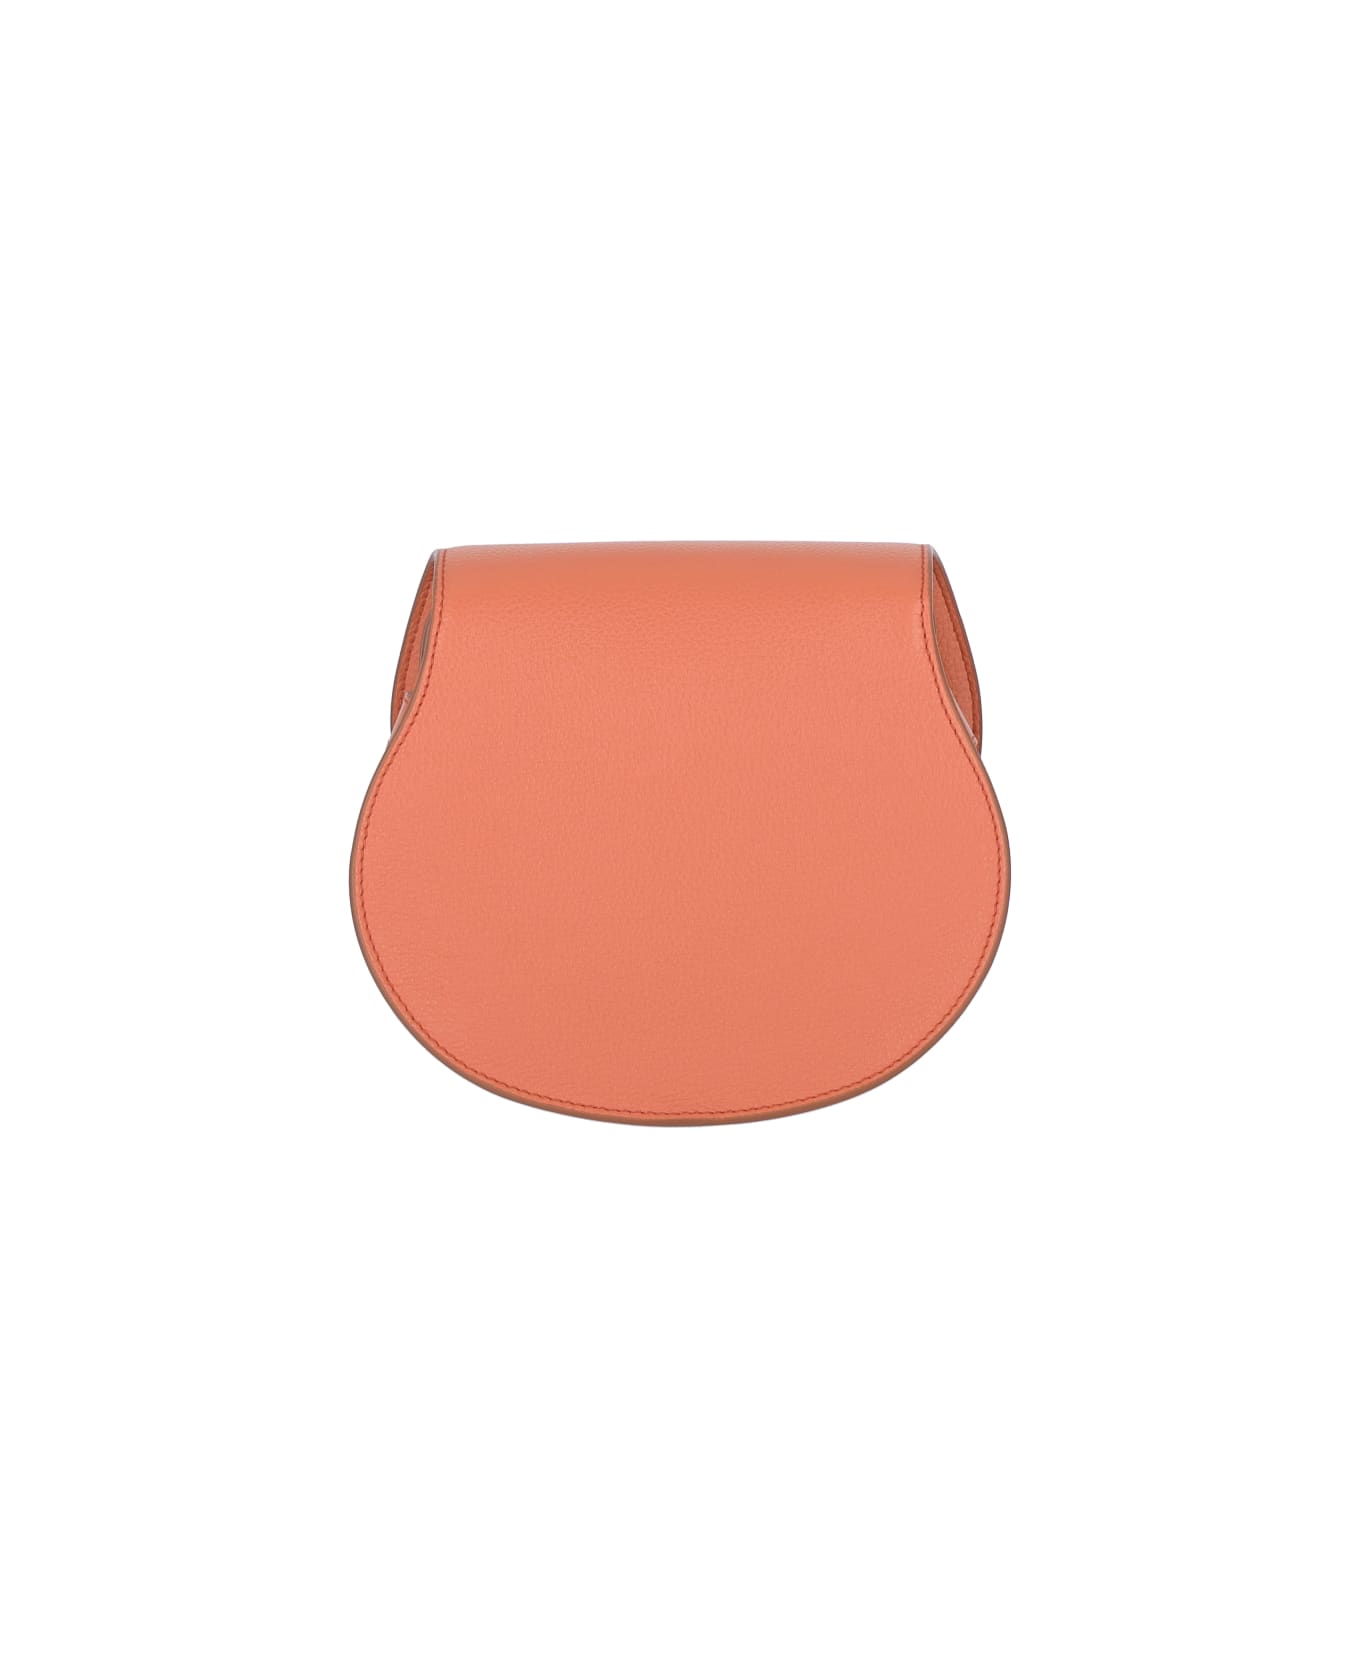 Chloé Mercie Shoulder Bag In Orange Leather - Orange トートバッグ